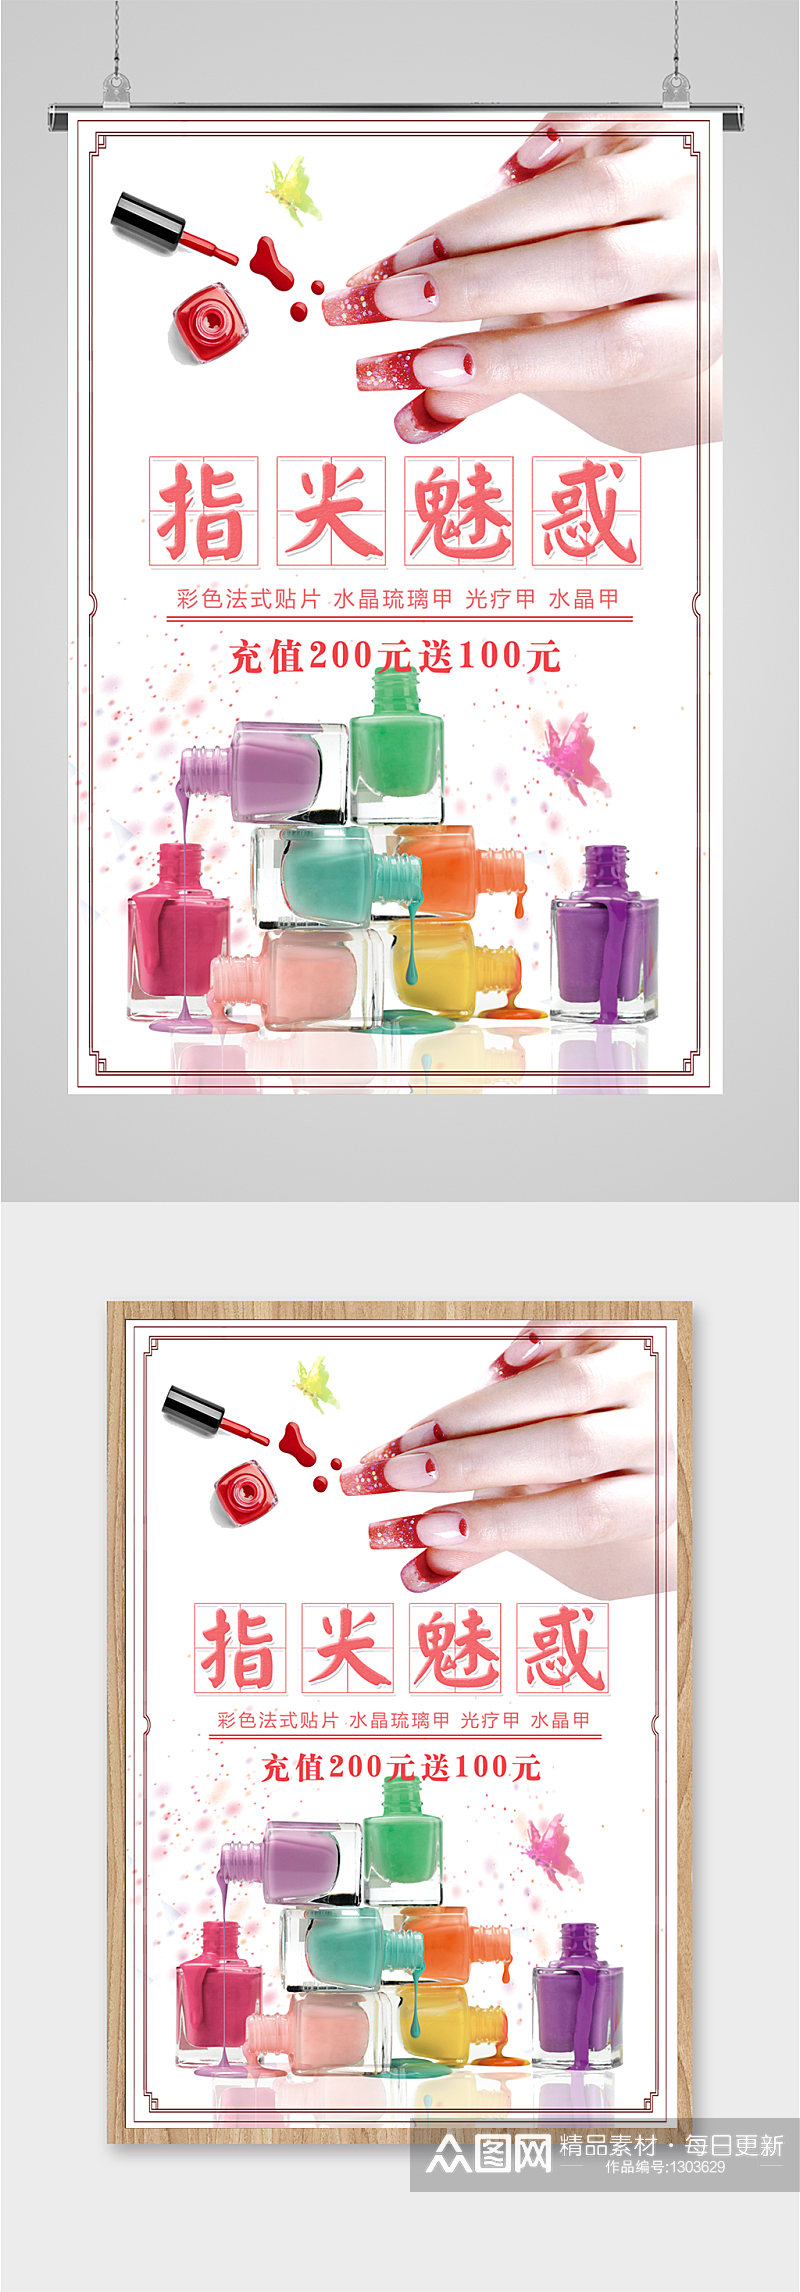 指甲油美妆产品海报素材